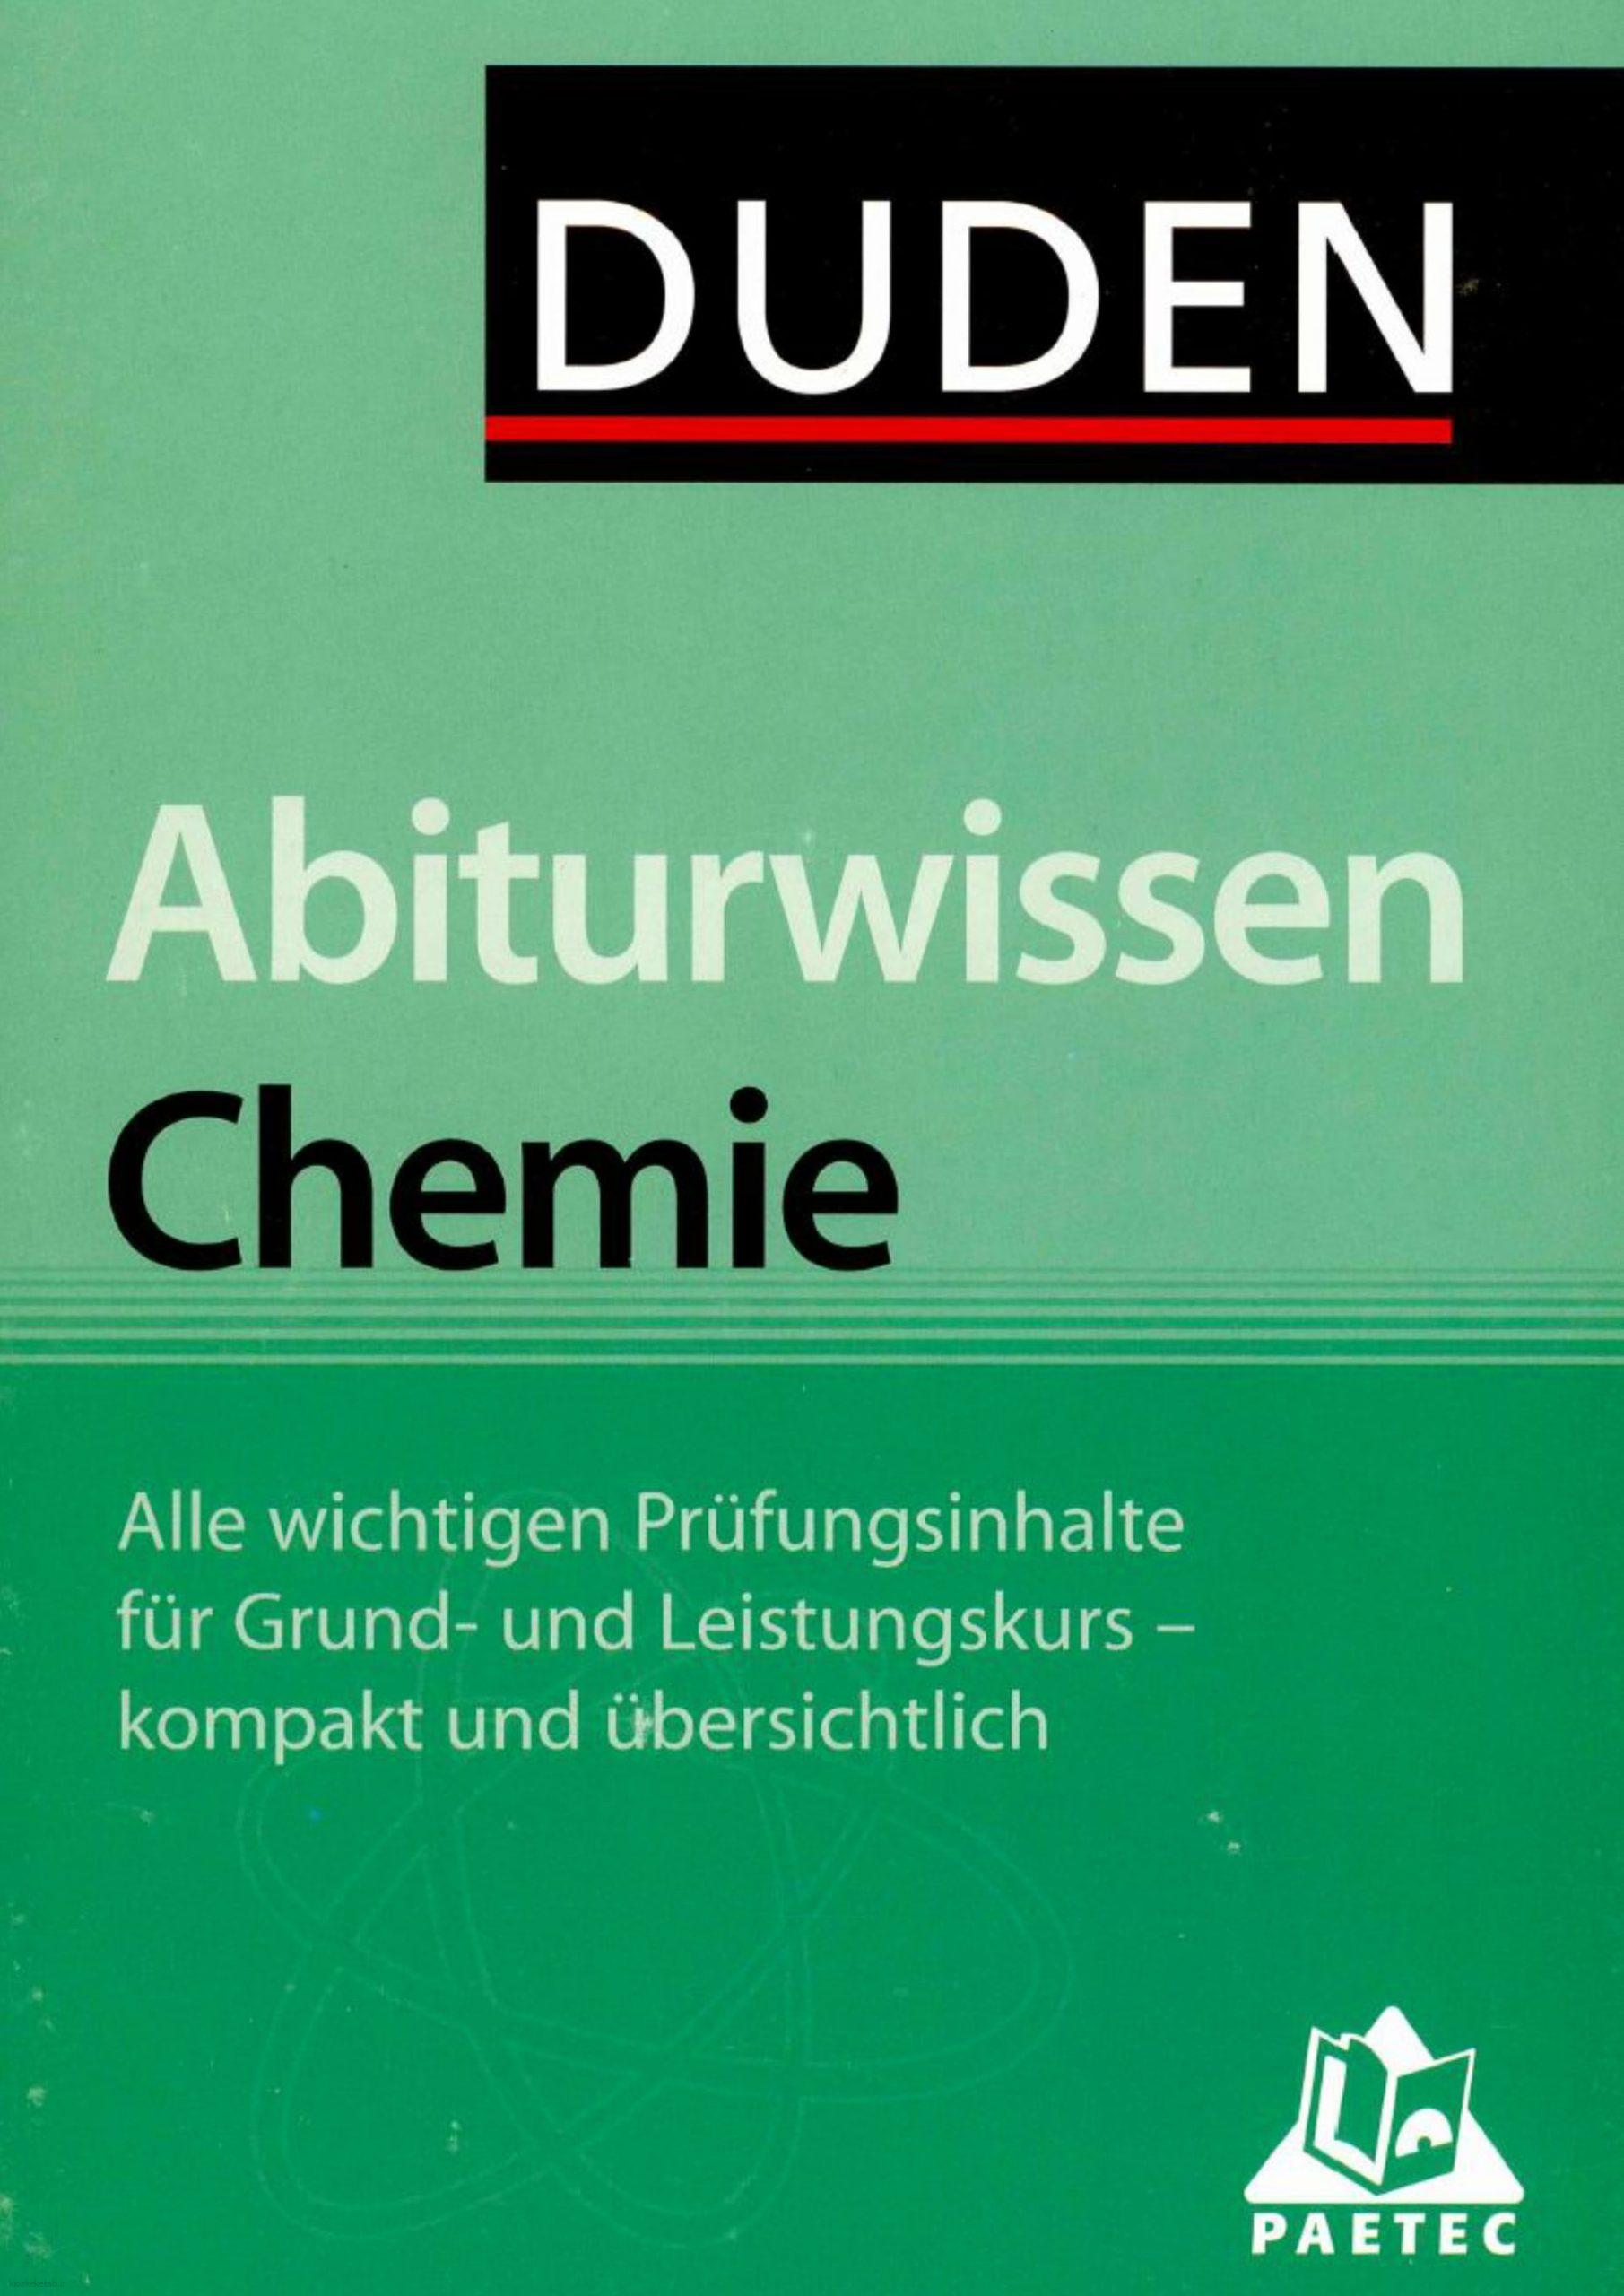 دانلود کتاب آلمانیduden abiturwissen chemie